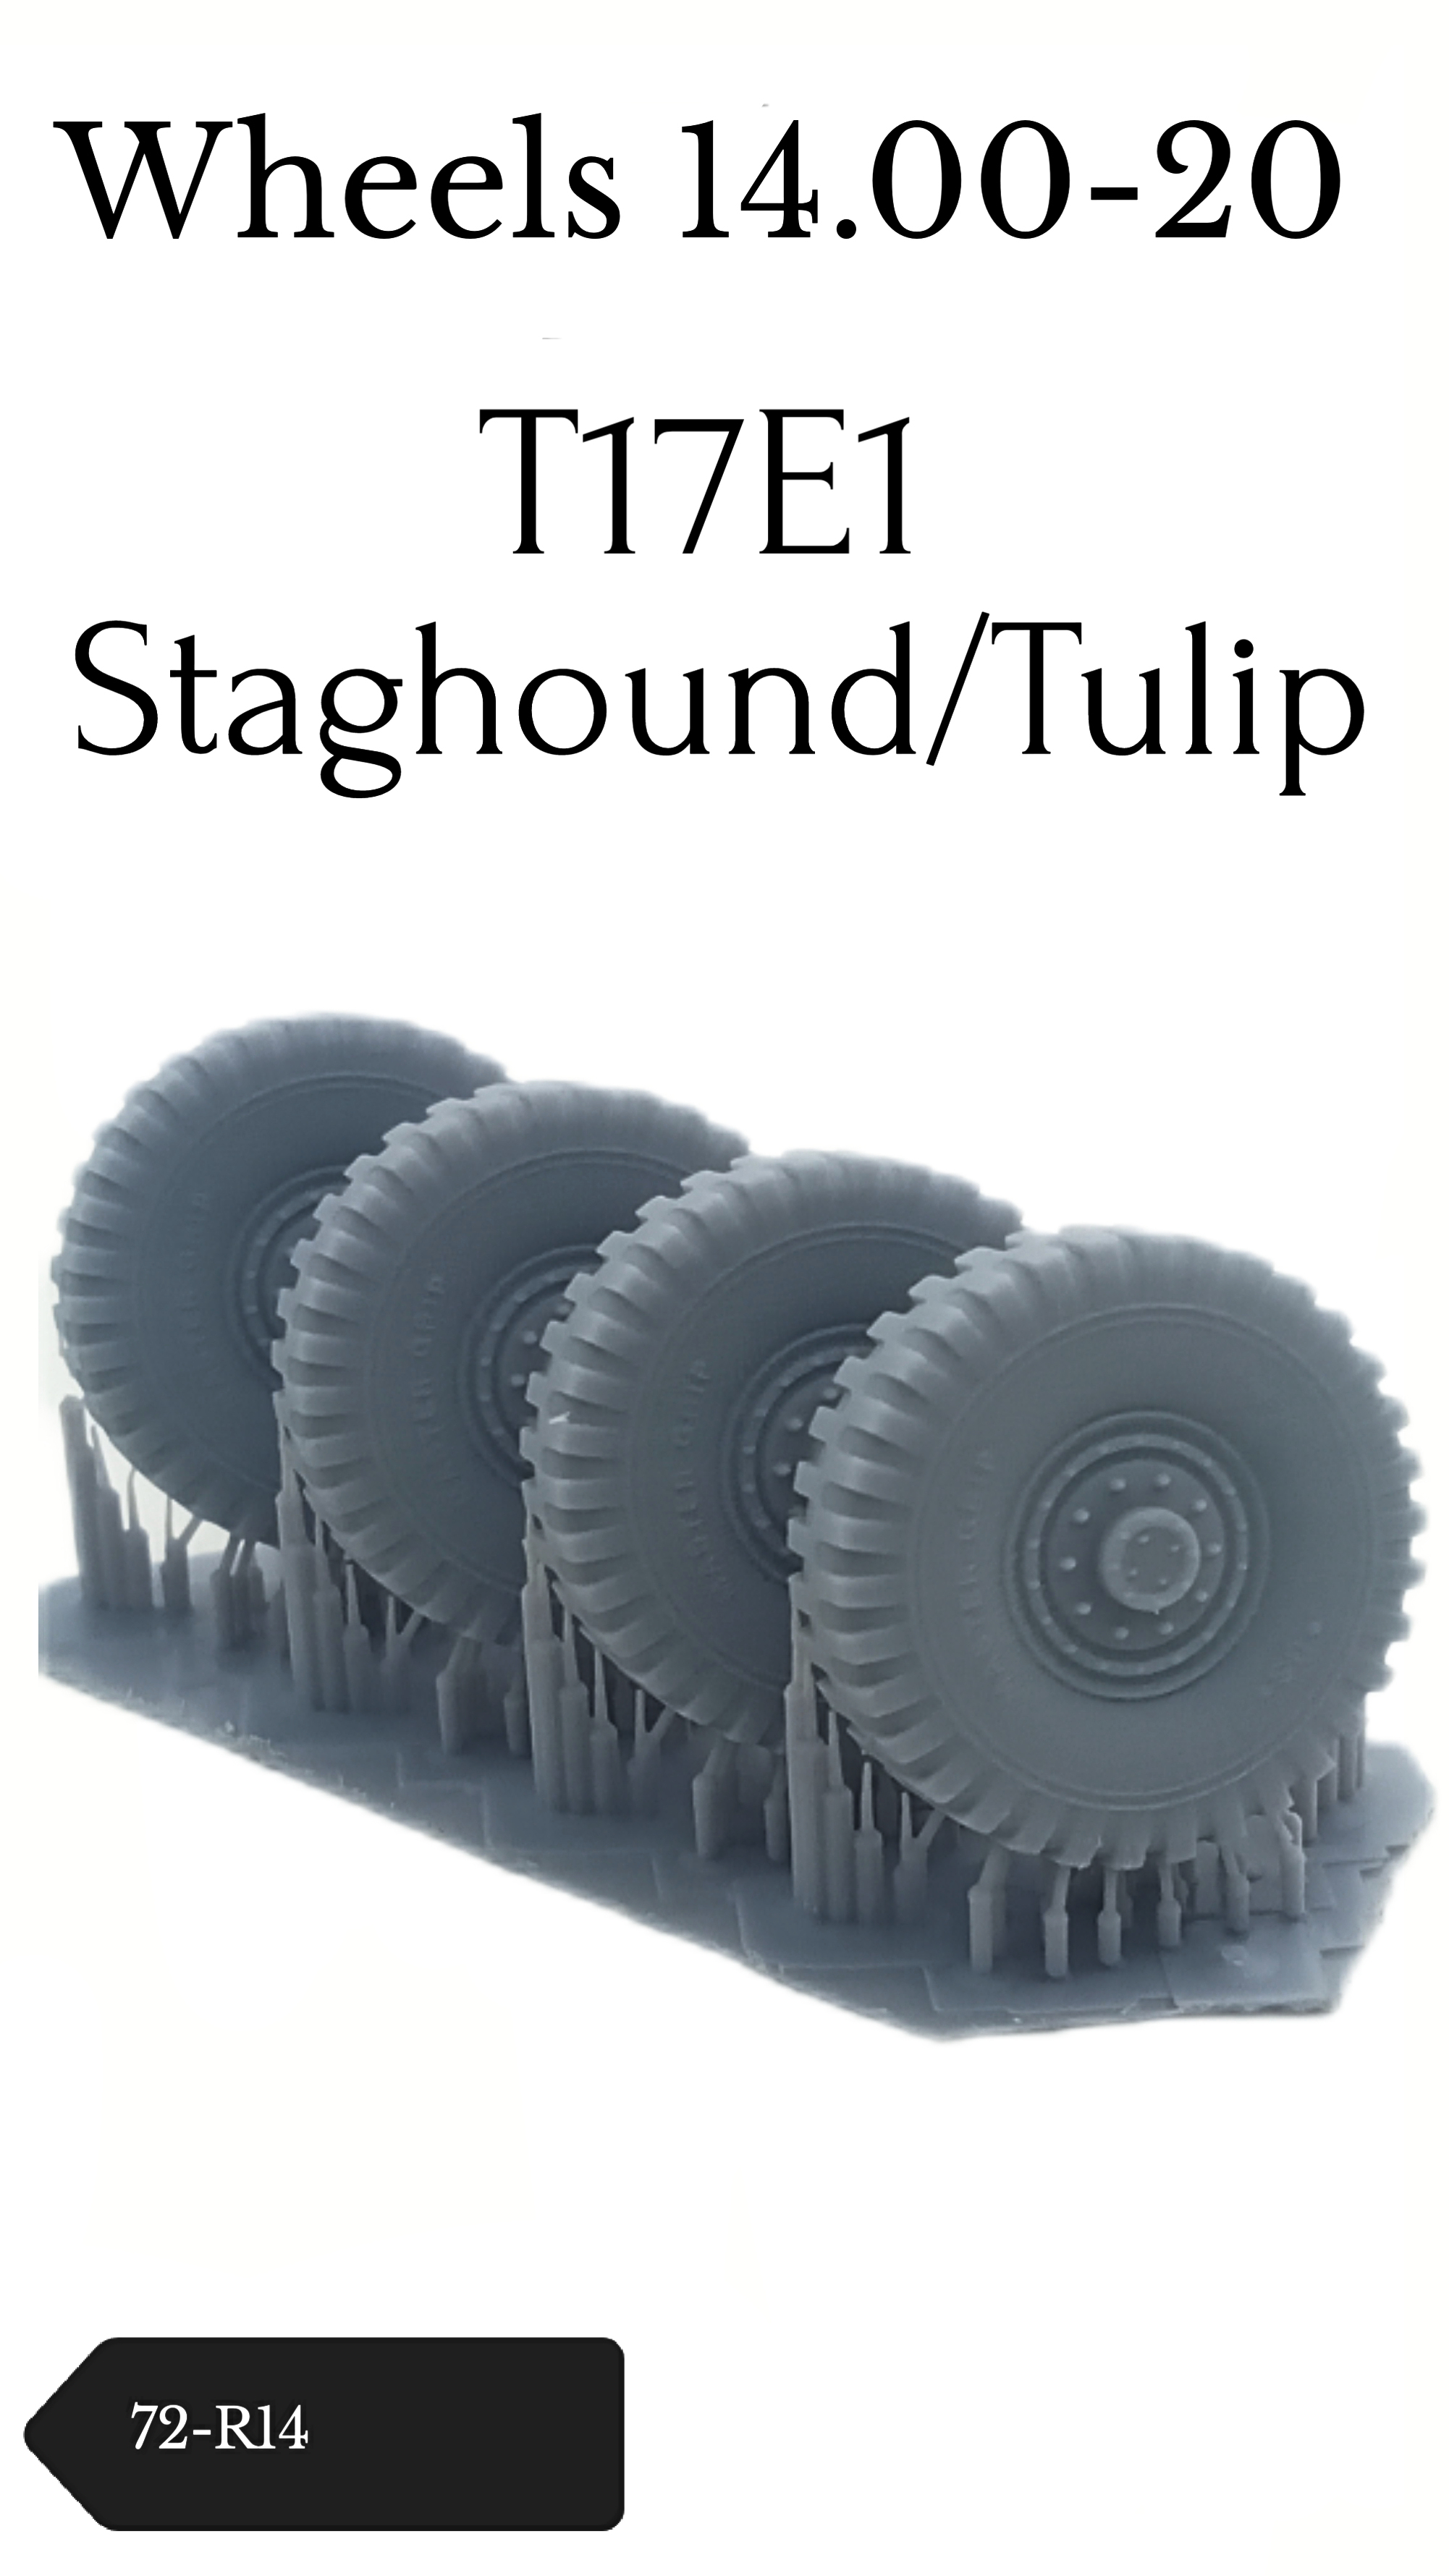 Staghound wheels 14.00-20 (RPM)